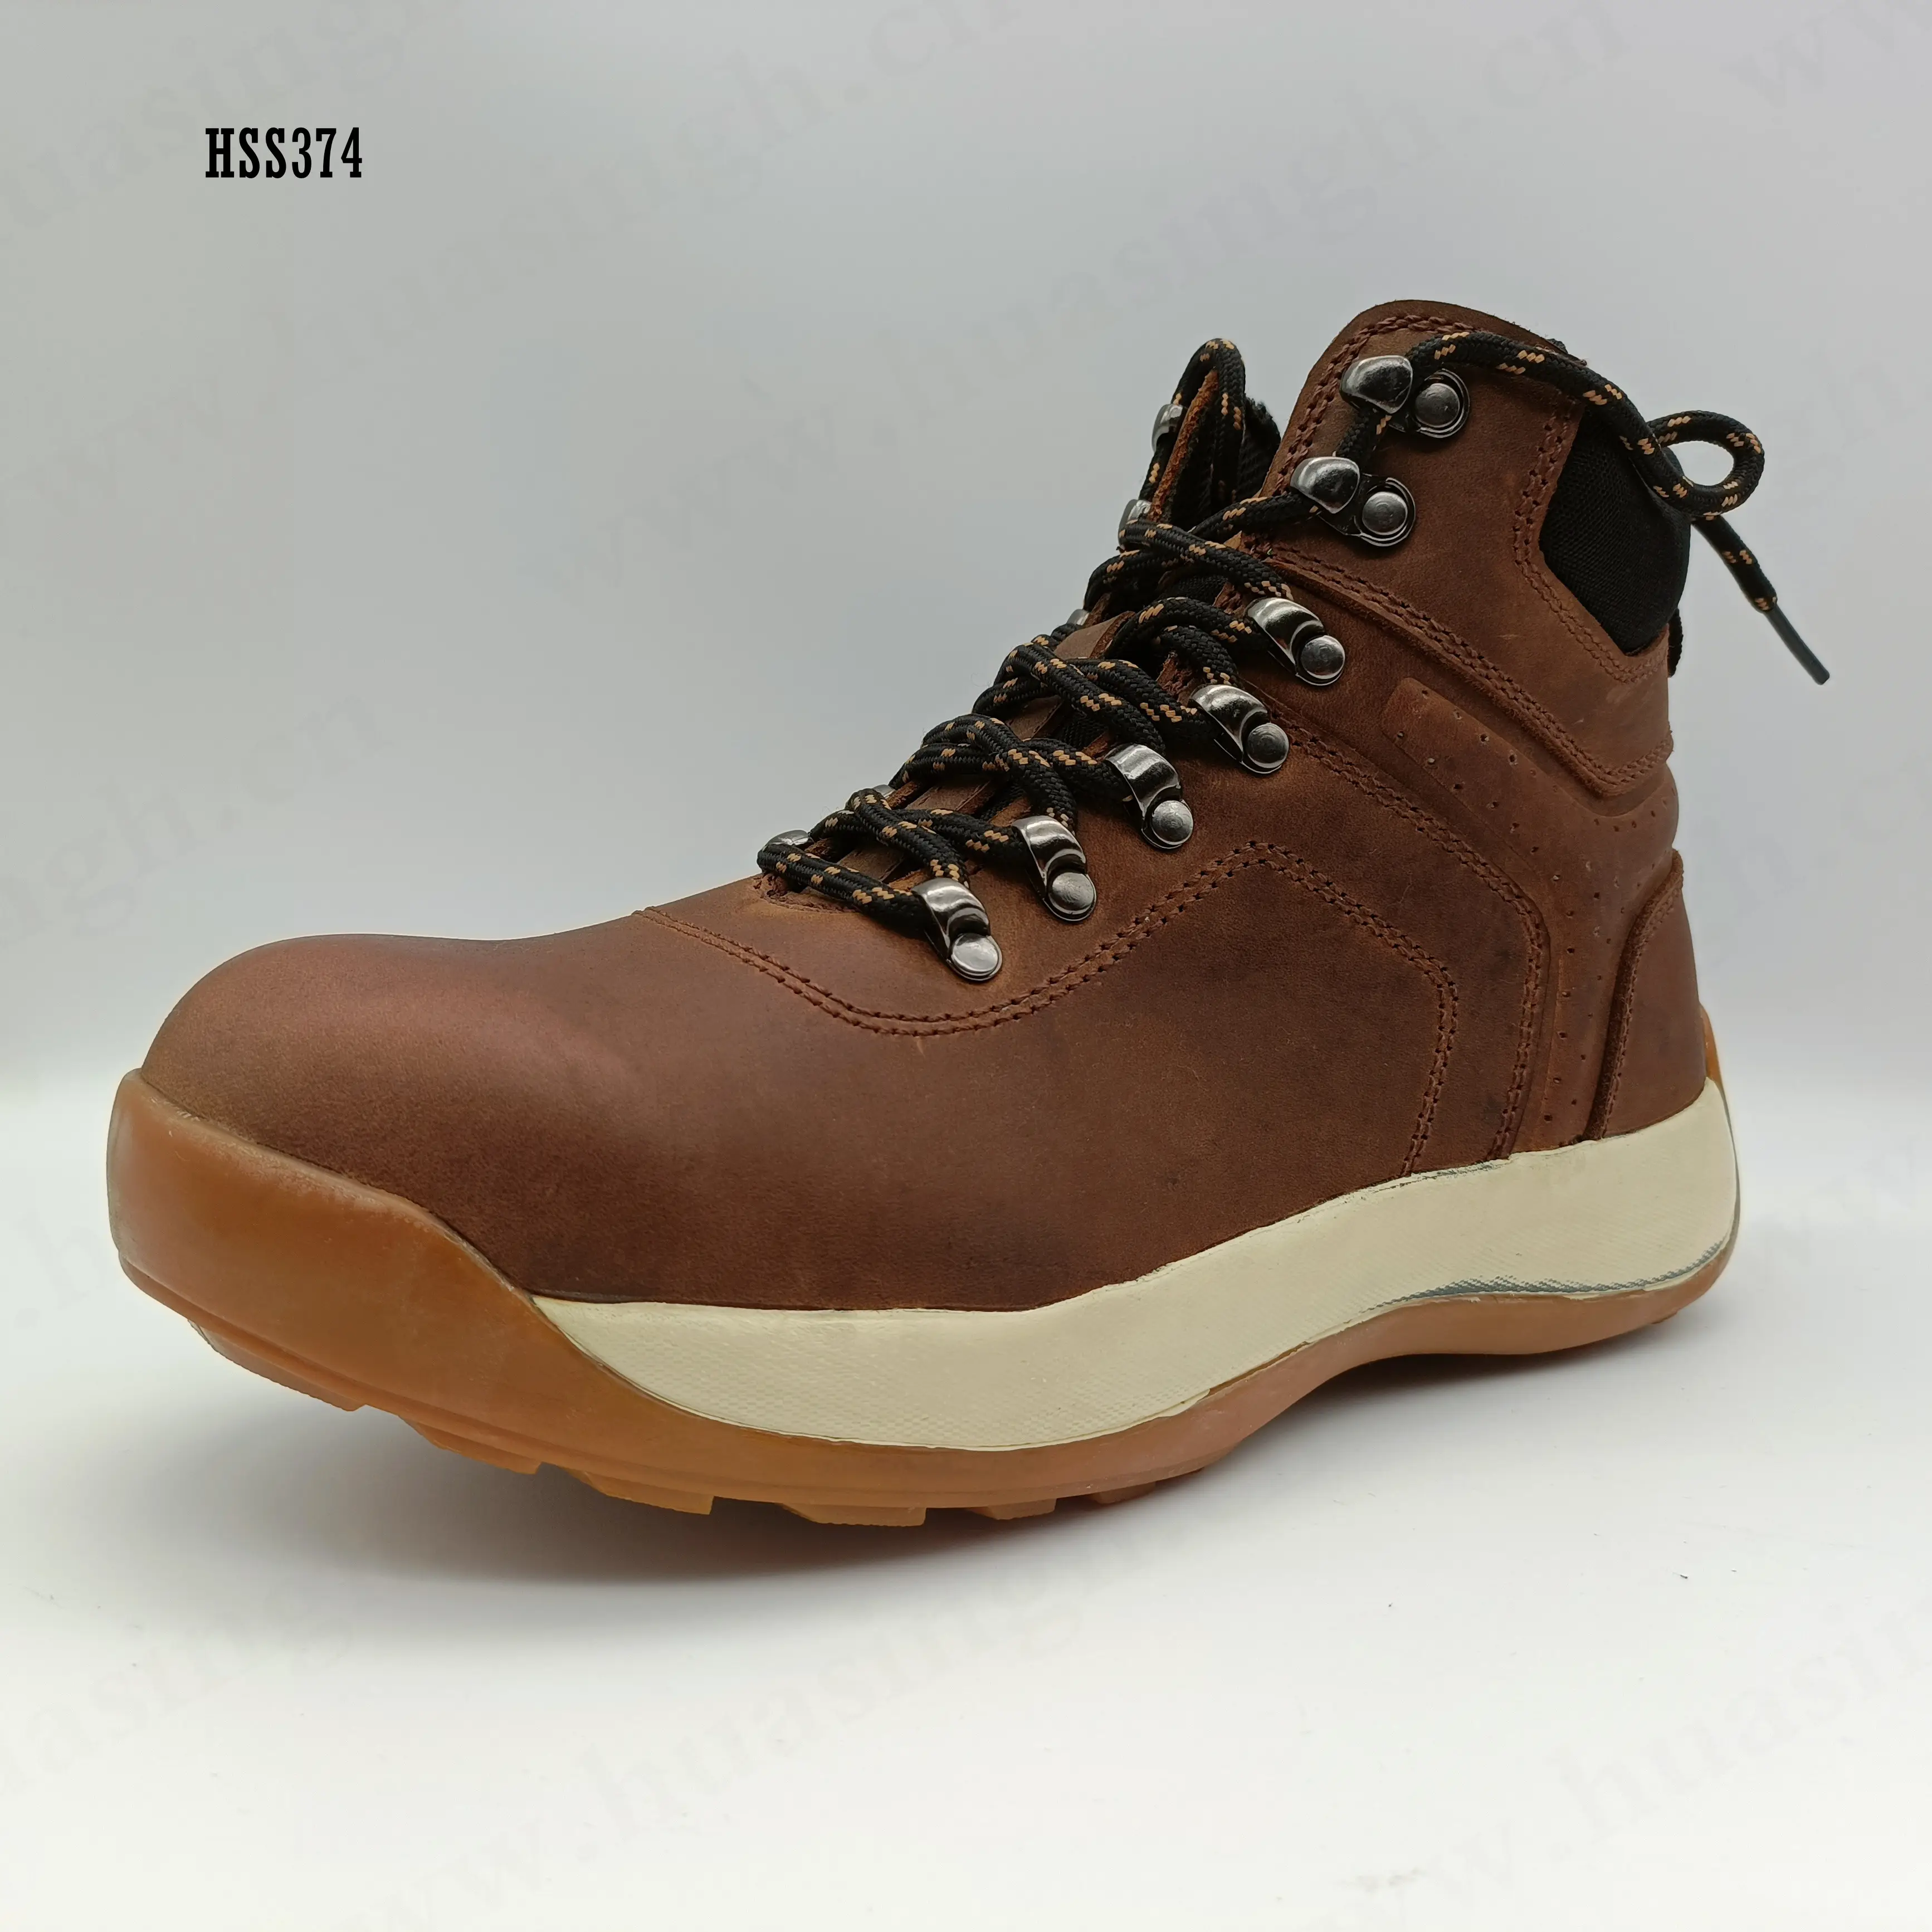 LXG-Botas de senderismo de cuero nobuk para exteriores, botas de seguridad con suela de goma EVA, color marrón